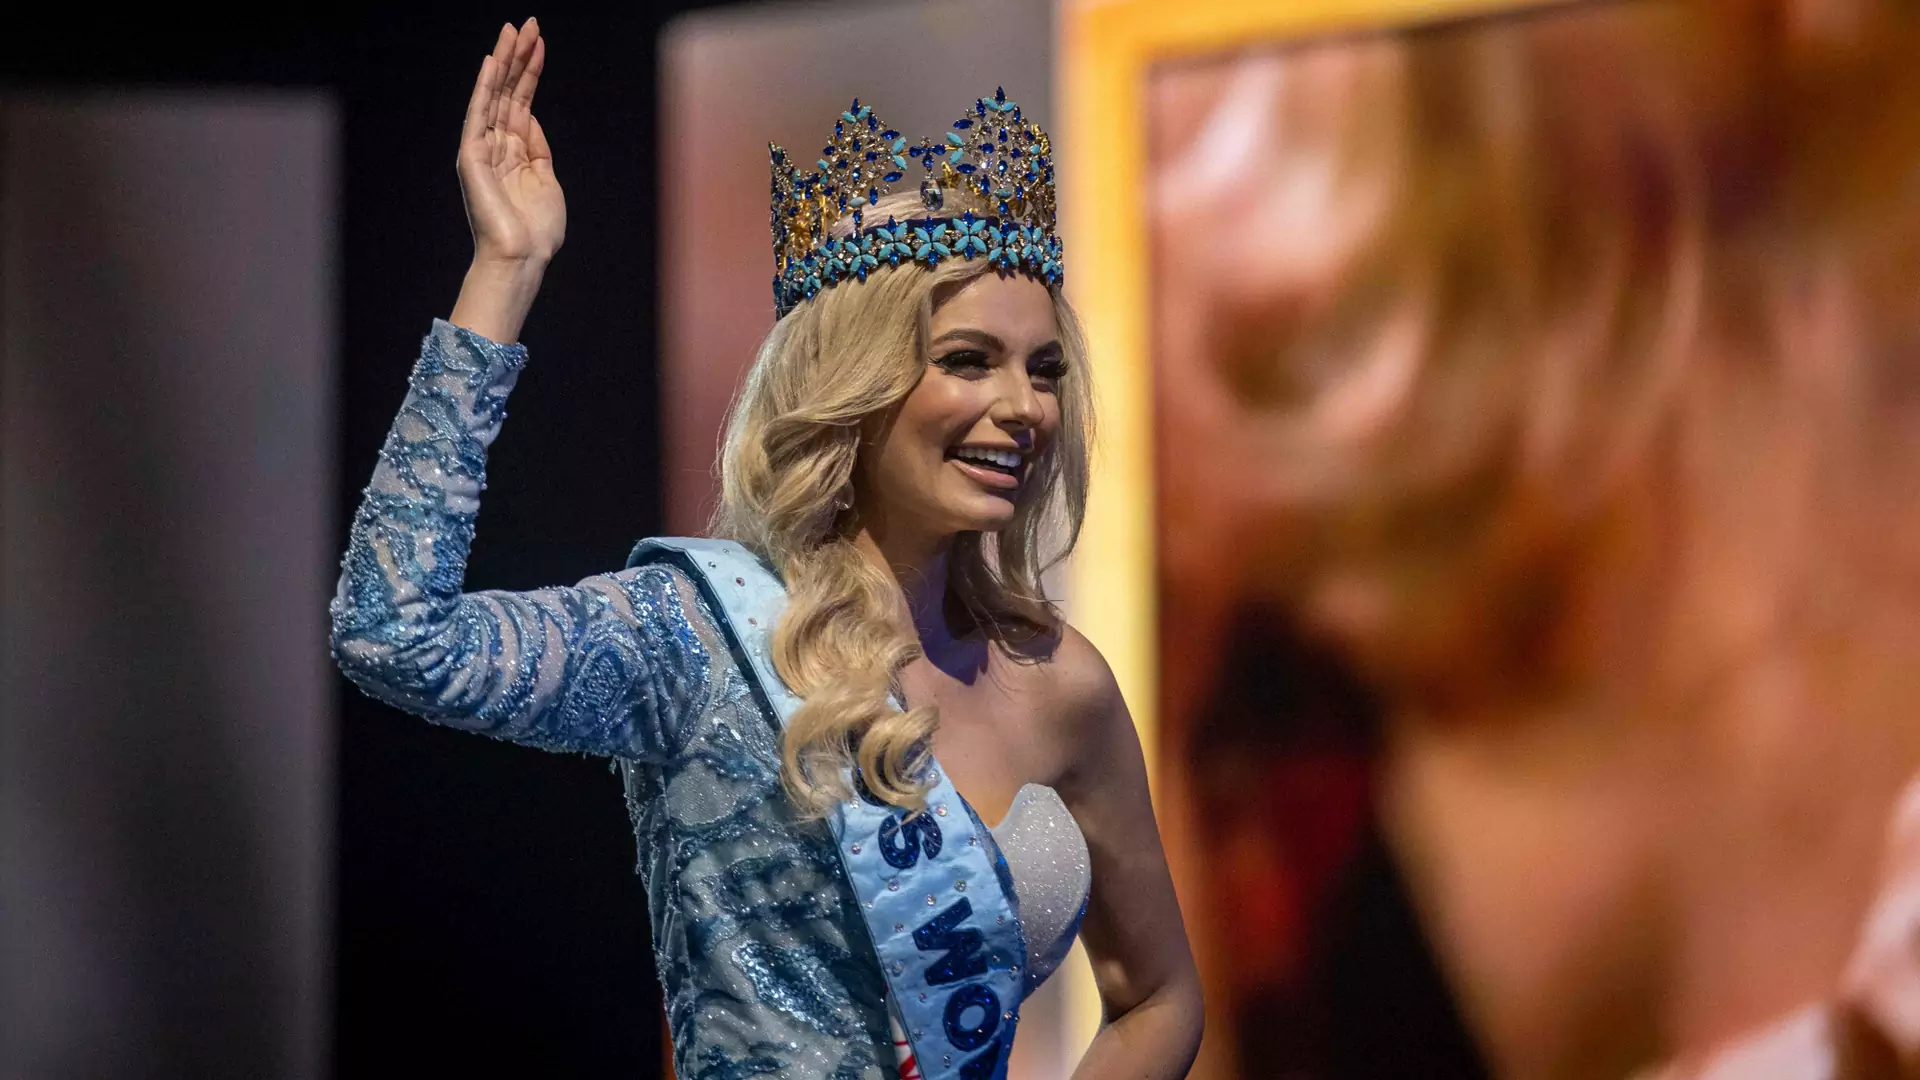 Polka "najpiękniejszą kobietą świata" drugi raz w historii. Karolina Bielawska została Miss World 2021